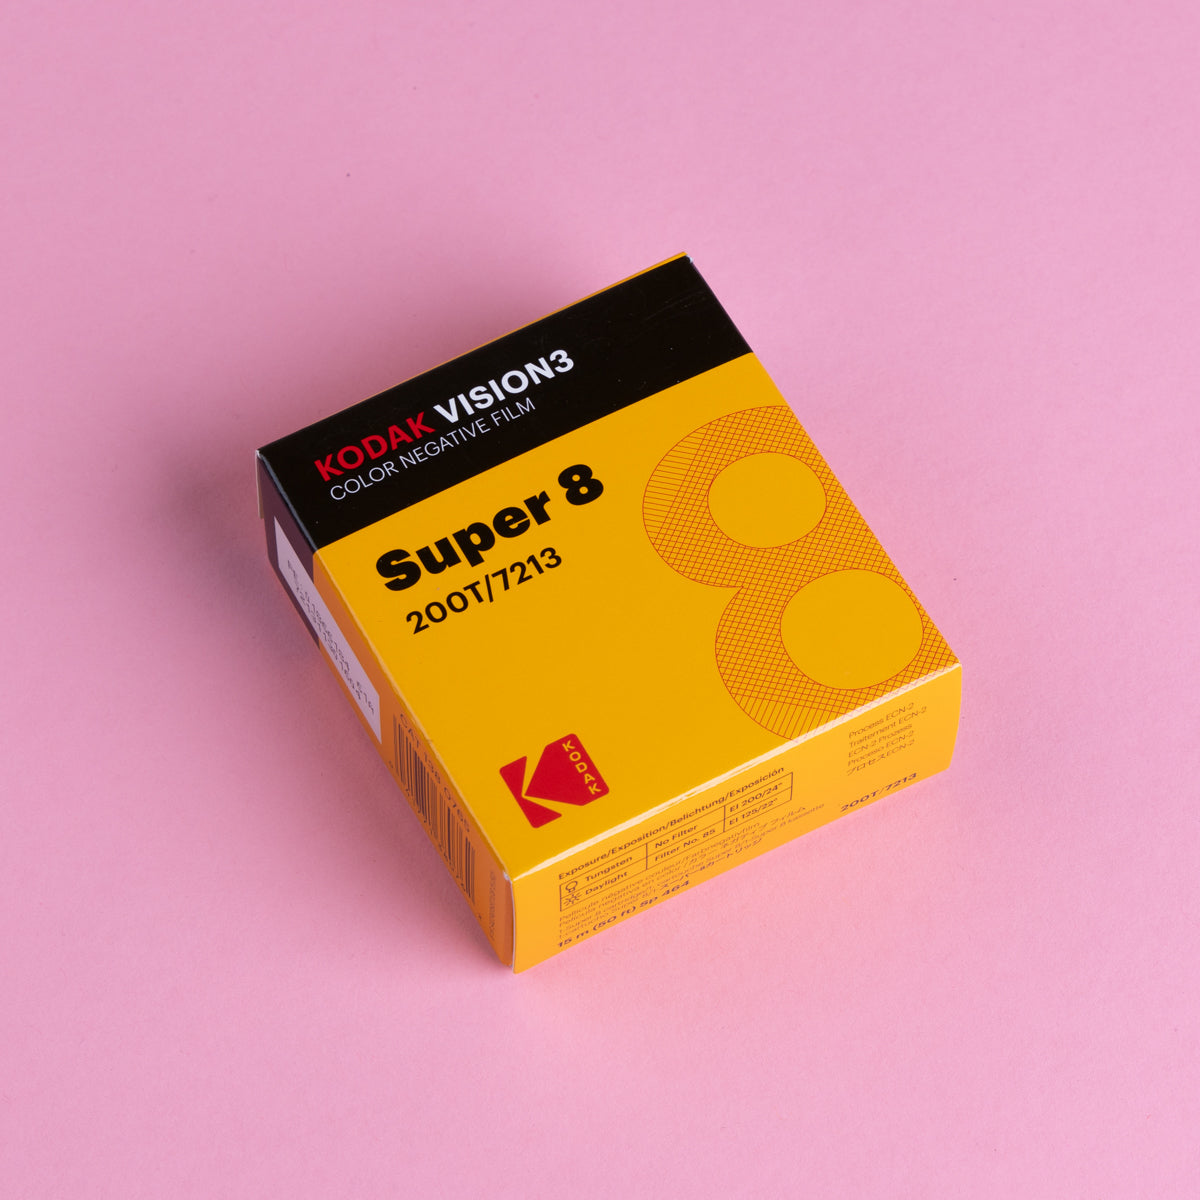 Kodak Super 8 Vision 3 200T (15m/50ft) (Copy)